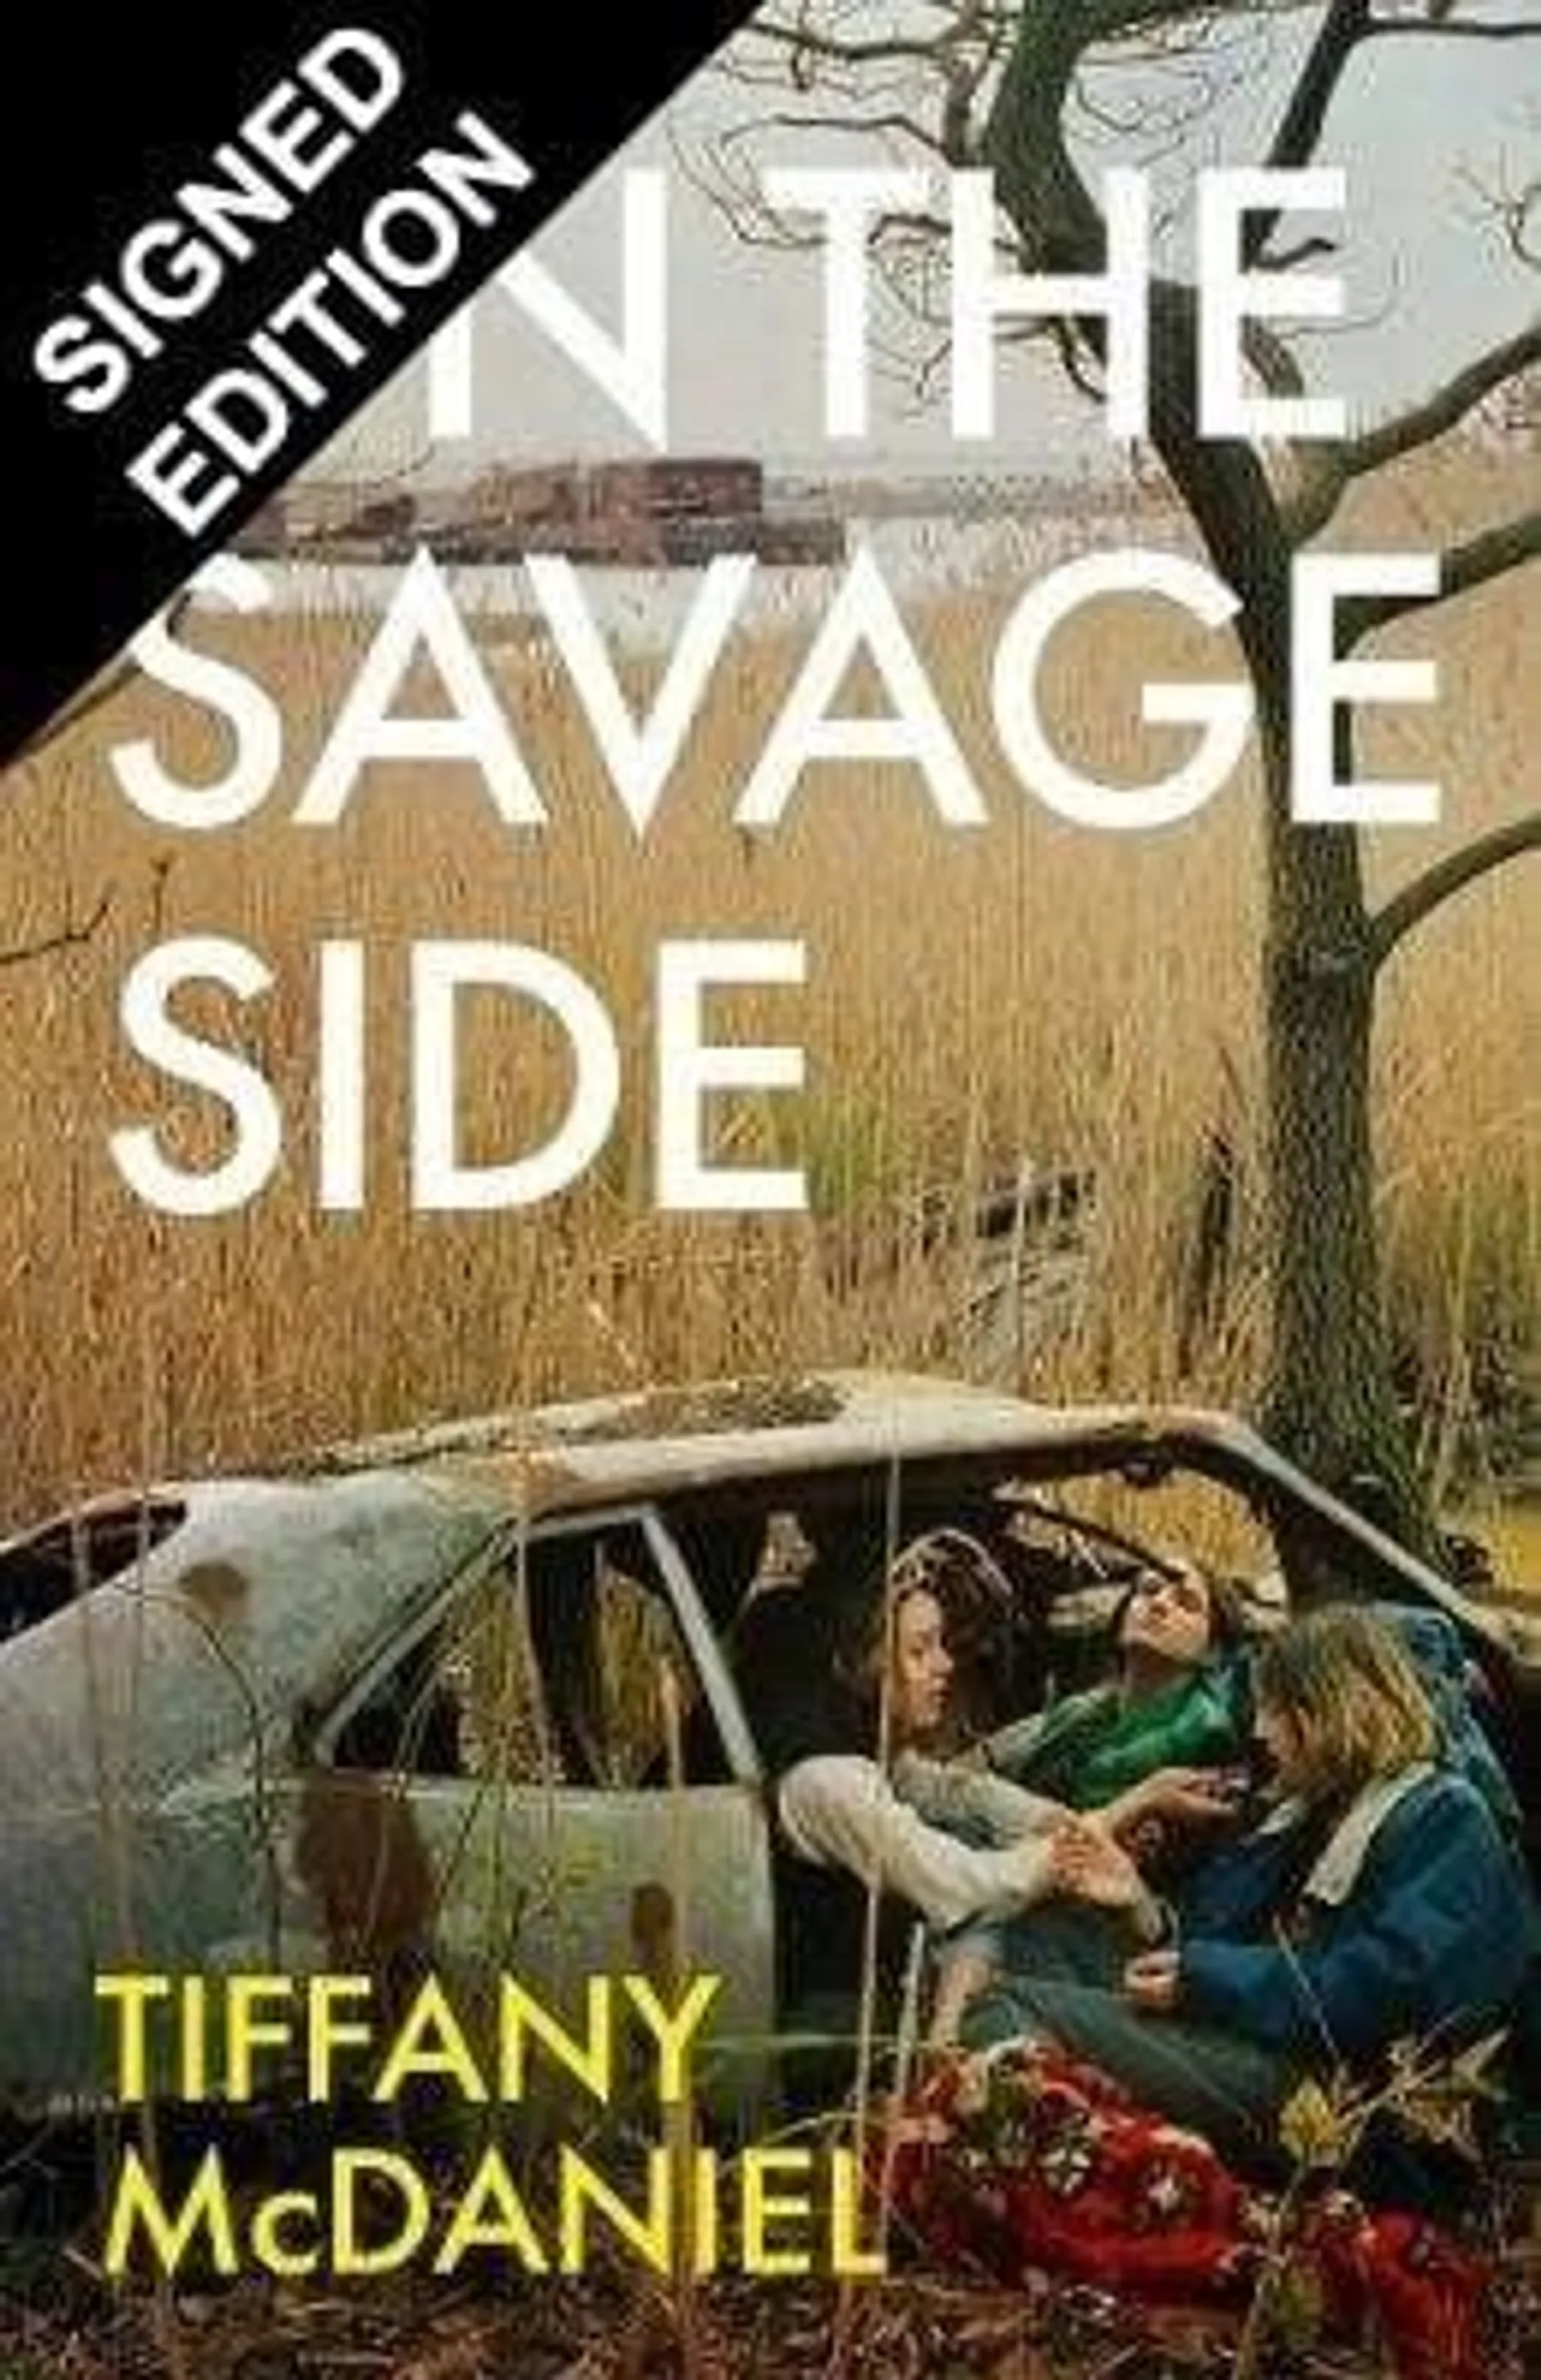 On the Savage Side: Signed Edition (Hardback)